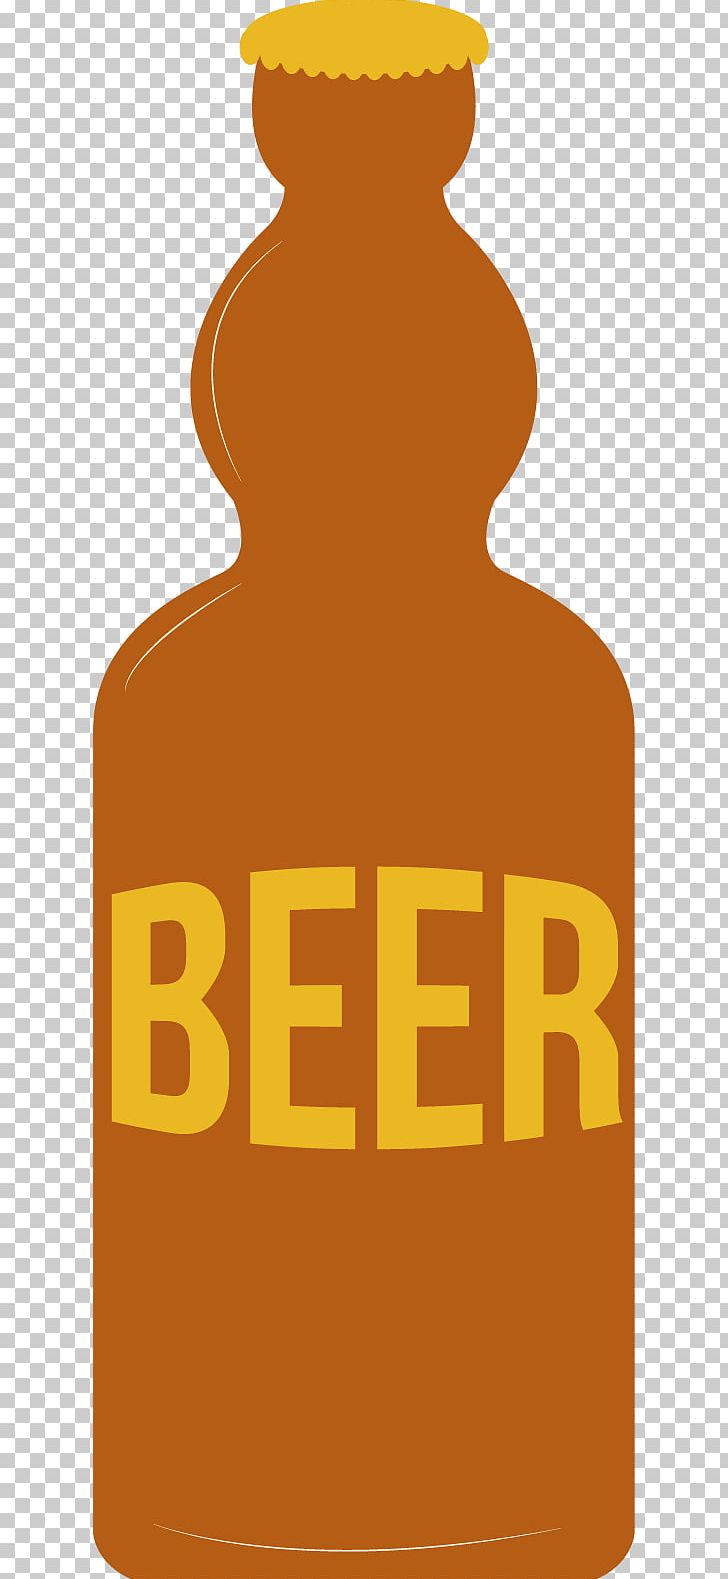 Beer Bottle Oktoberfest Beer Bottle PNG, Clipart, Adobe Illustrator, Beer, Beer, Beer Bottle, Beer Festival Free PNG Download